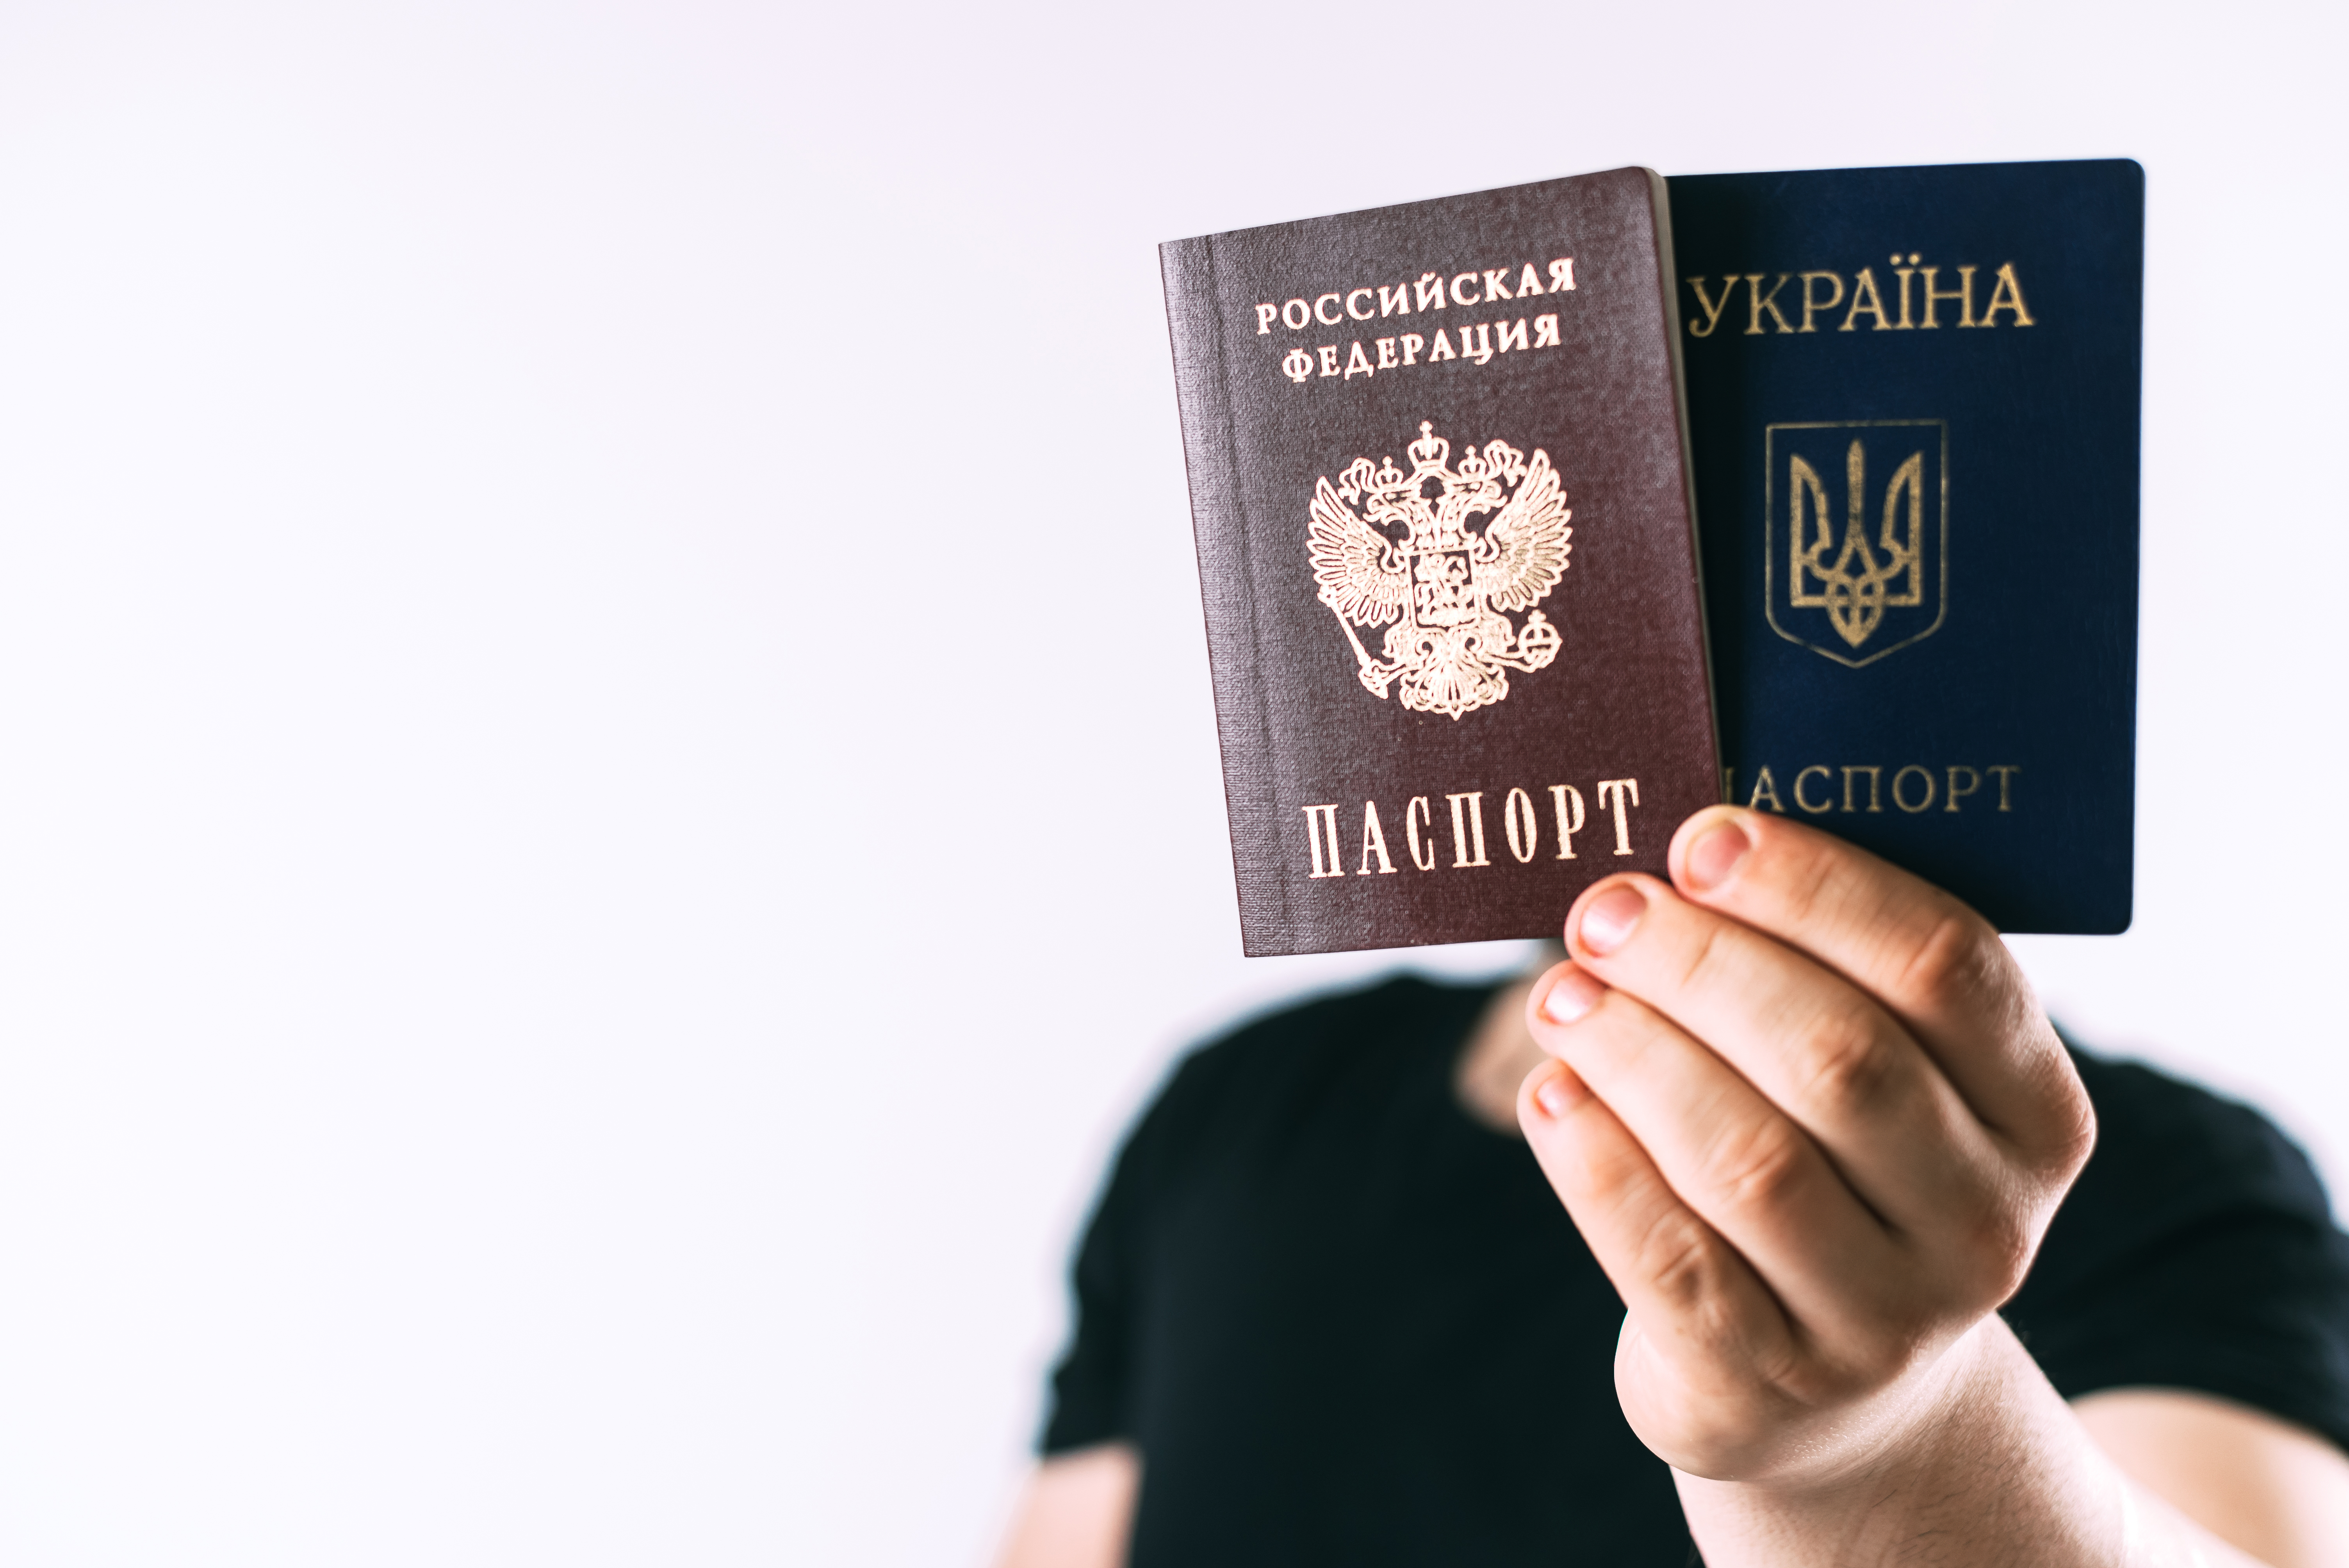 Паспорт Украины и РФ, с которыми можно пересекать границу